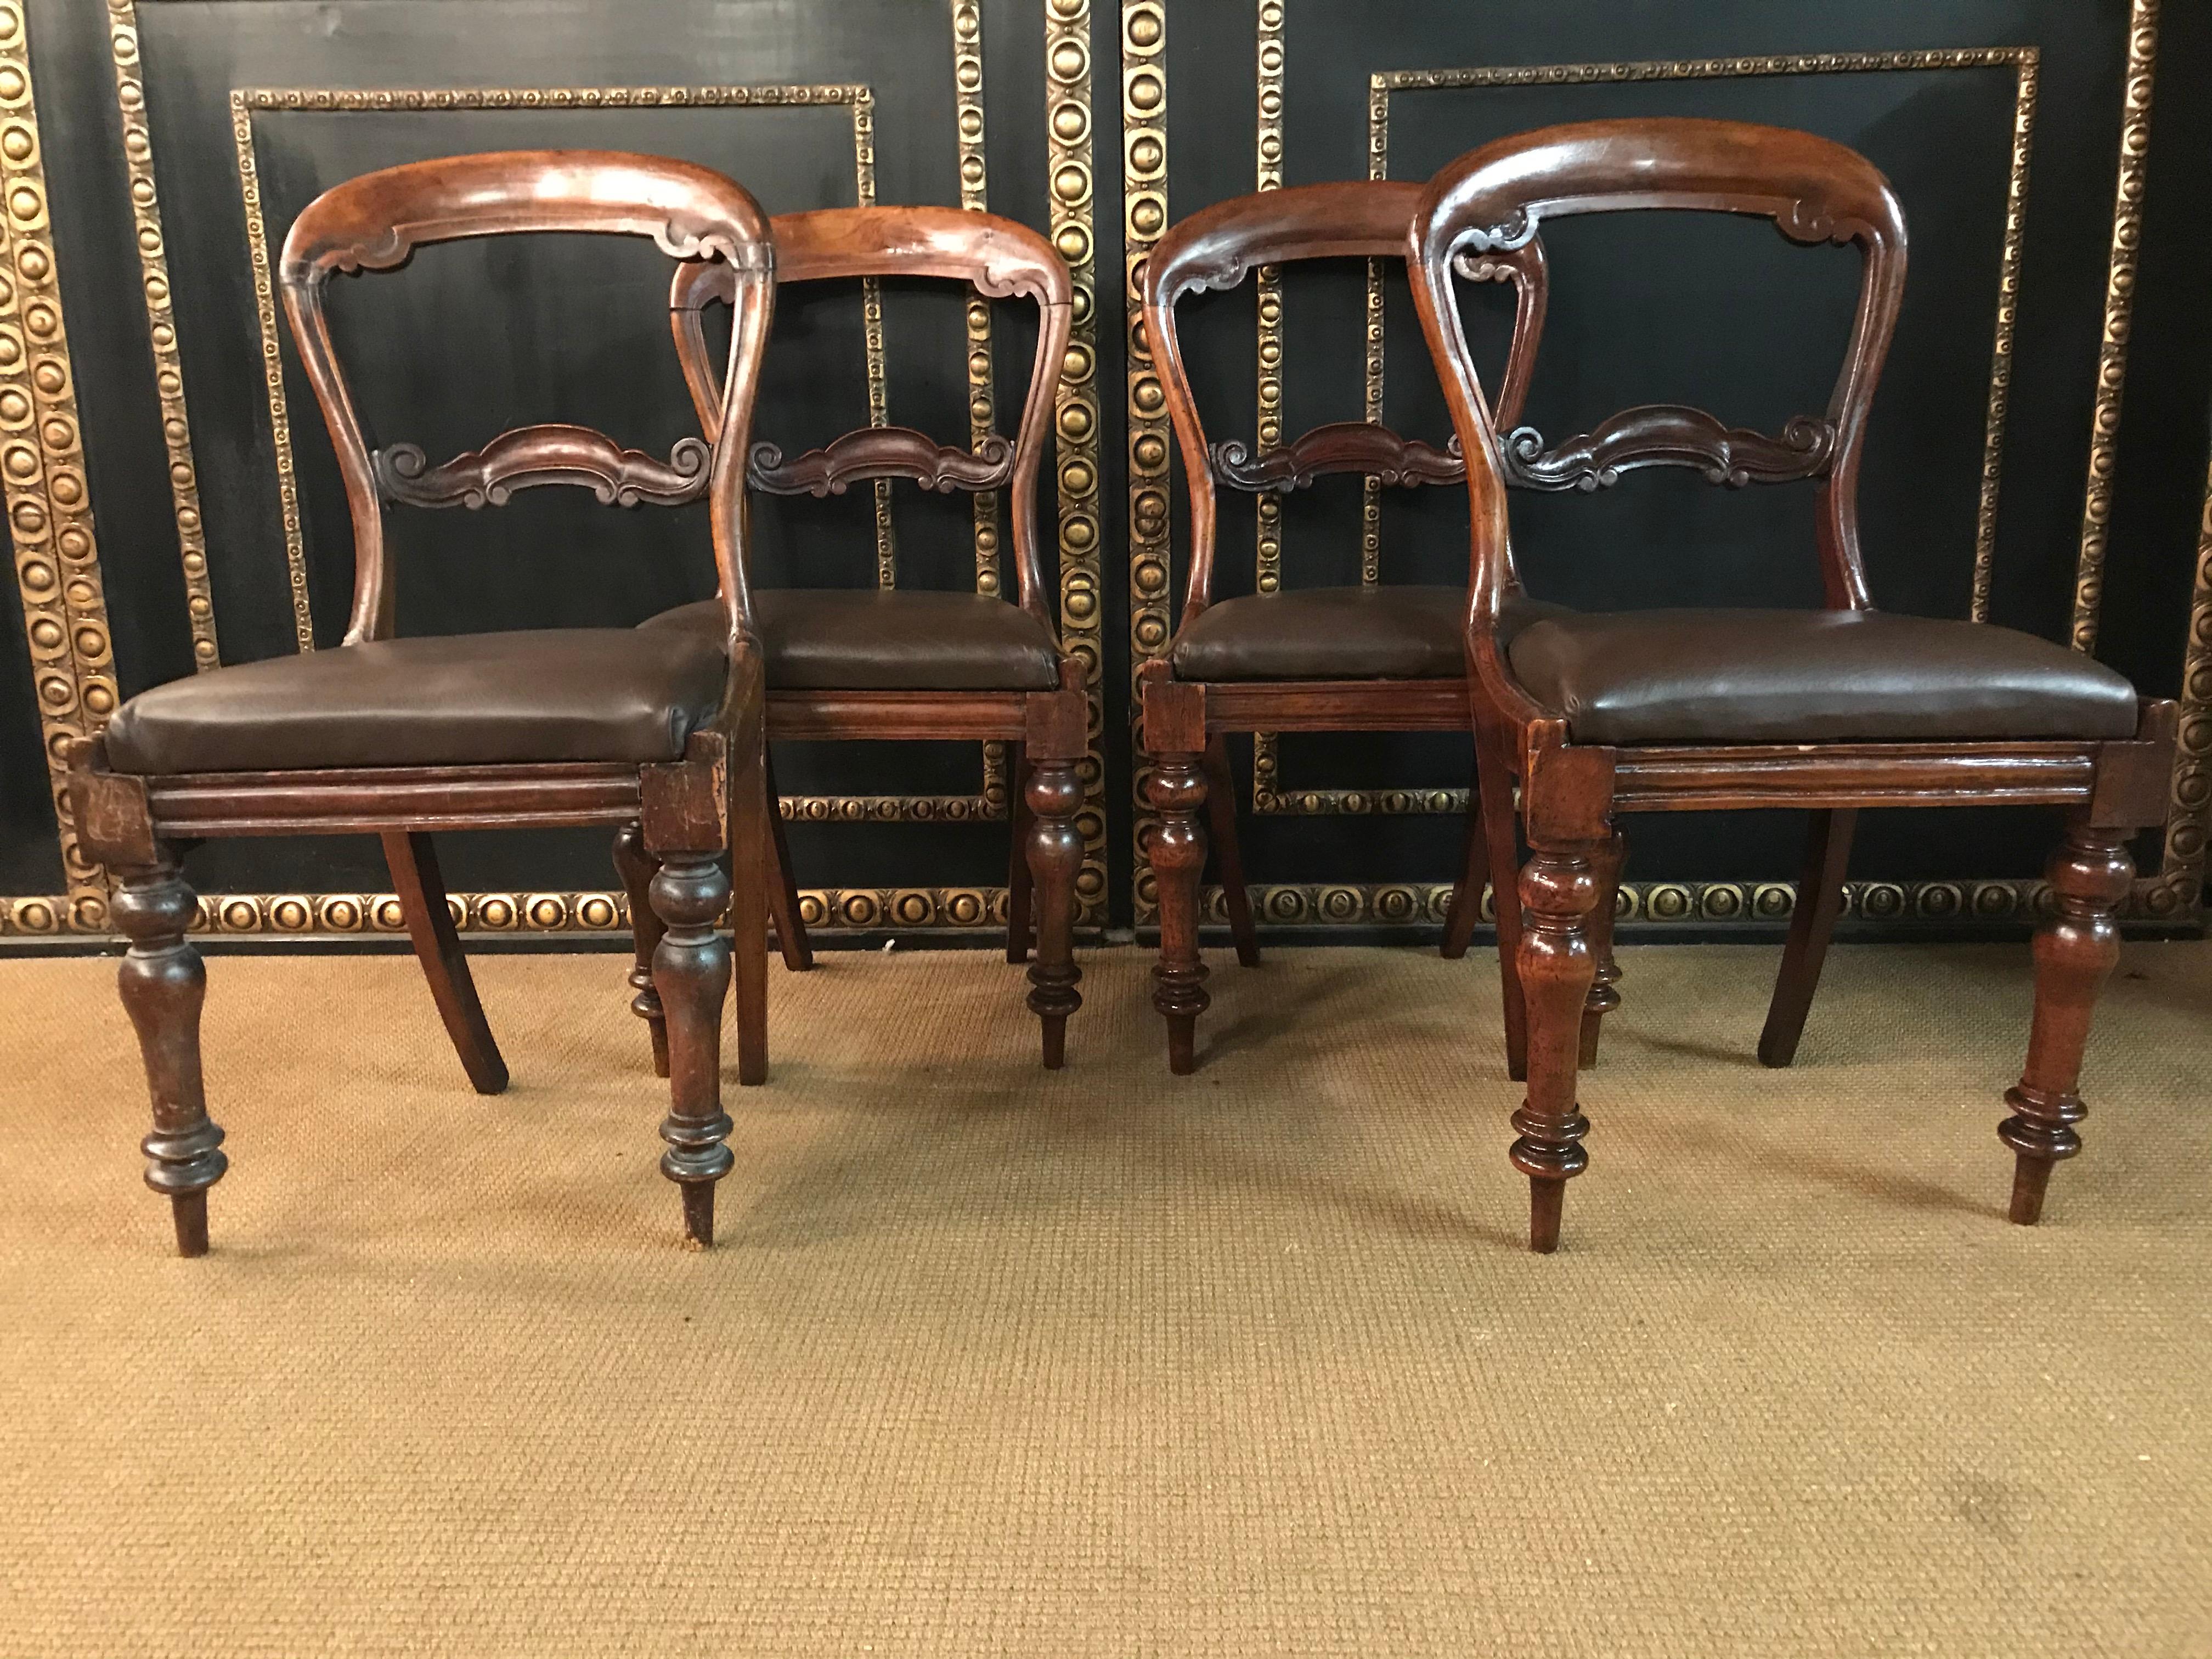 4 Original antique Biedermeier Chairs Solid Mahogany, circa 1840 In Good Condition For Sale In Berlin, DE